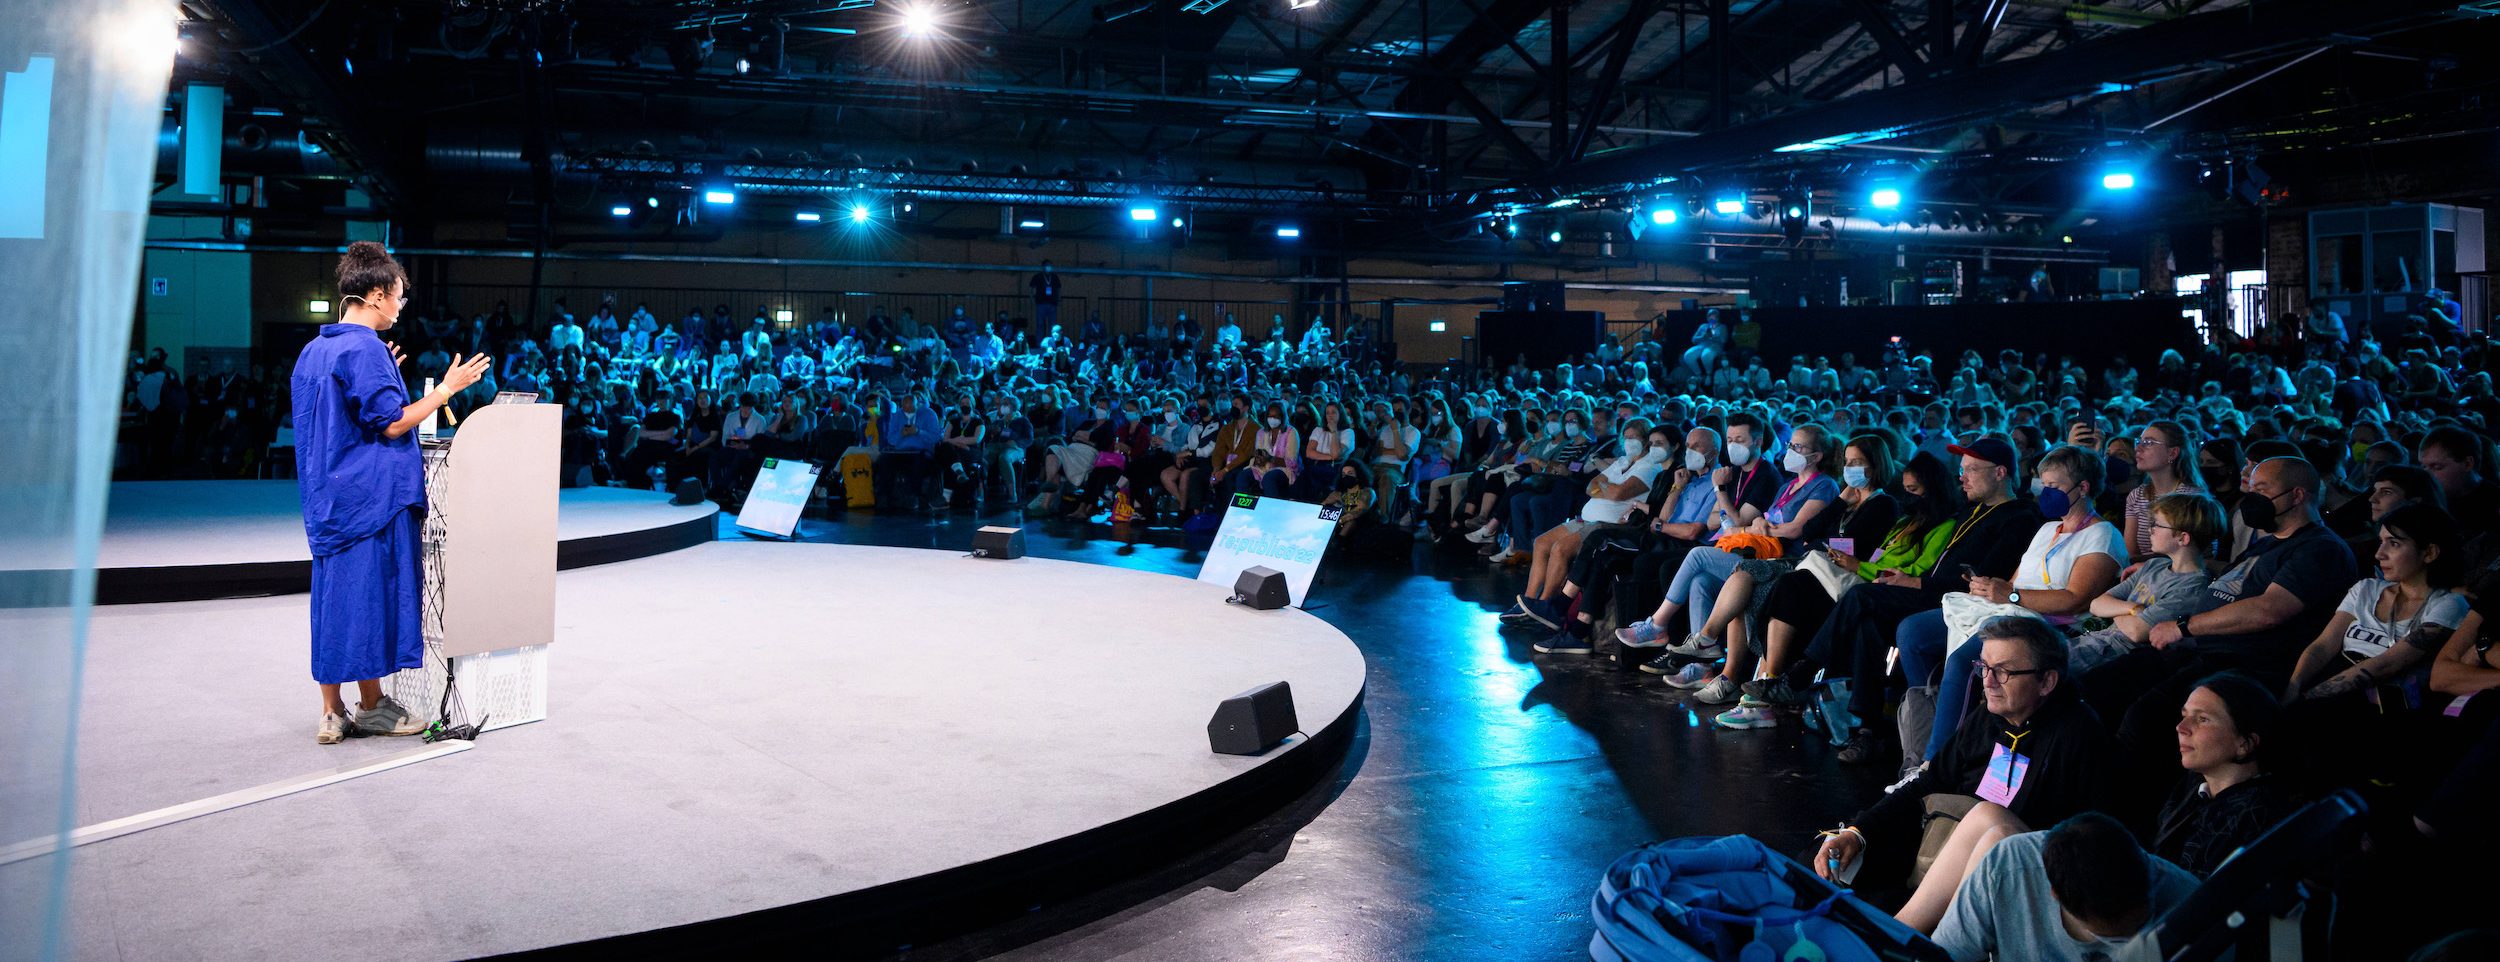 re:publica 22: Die 9 spannendsten Sessions aus Diversity-Sicht als Video